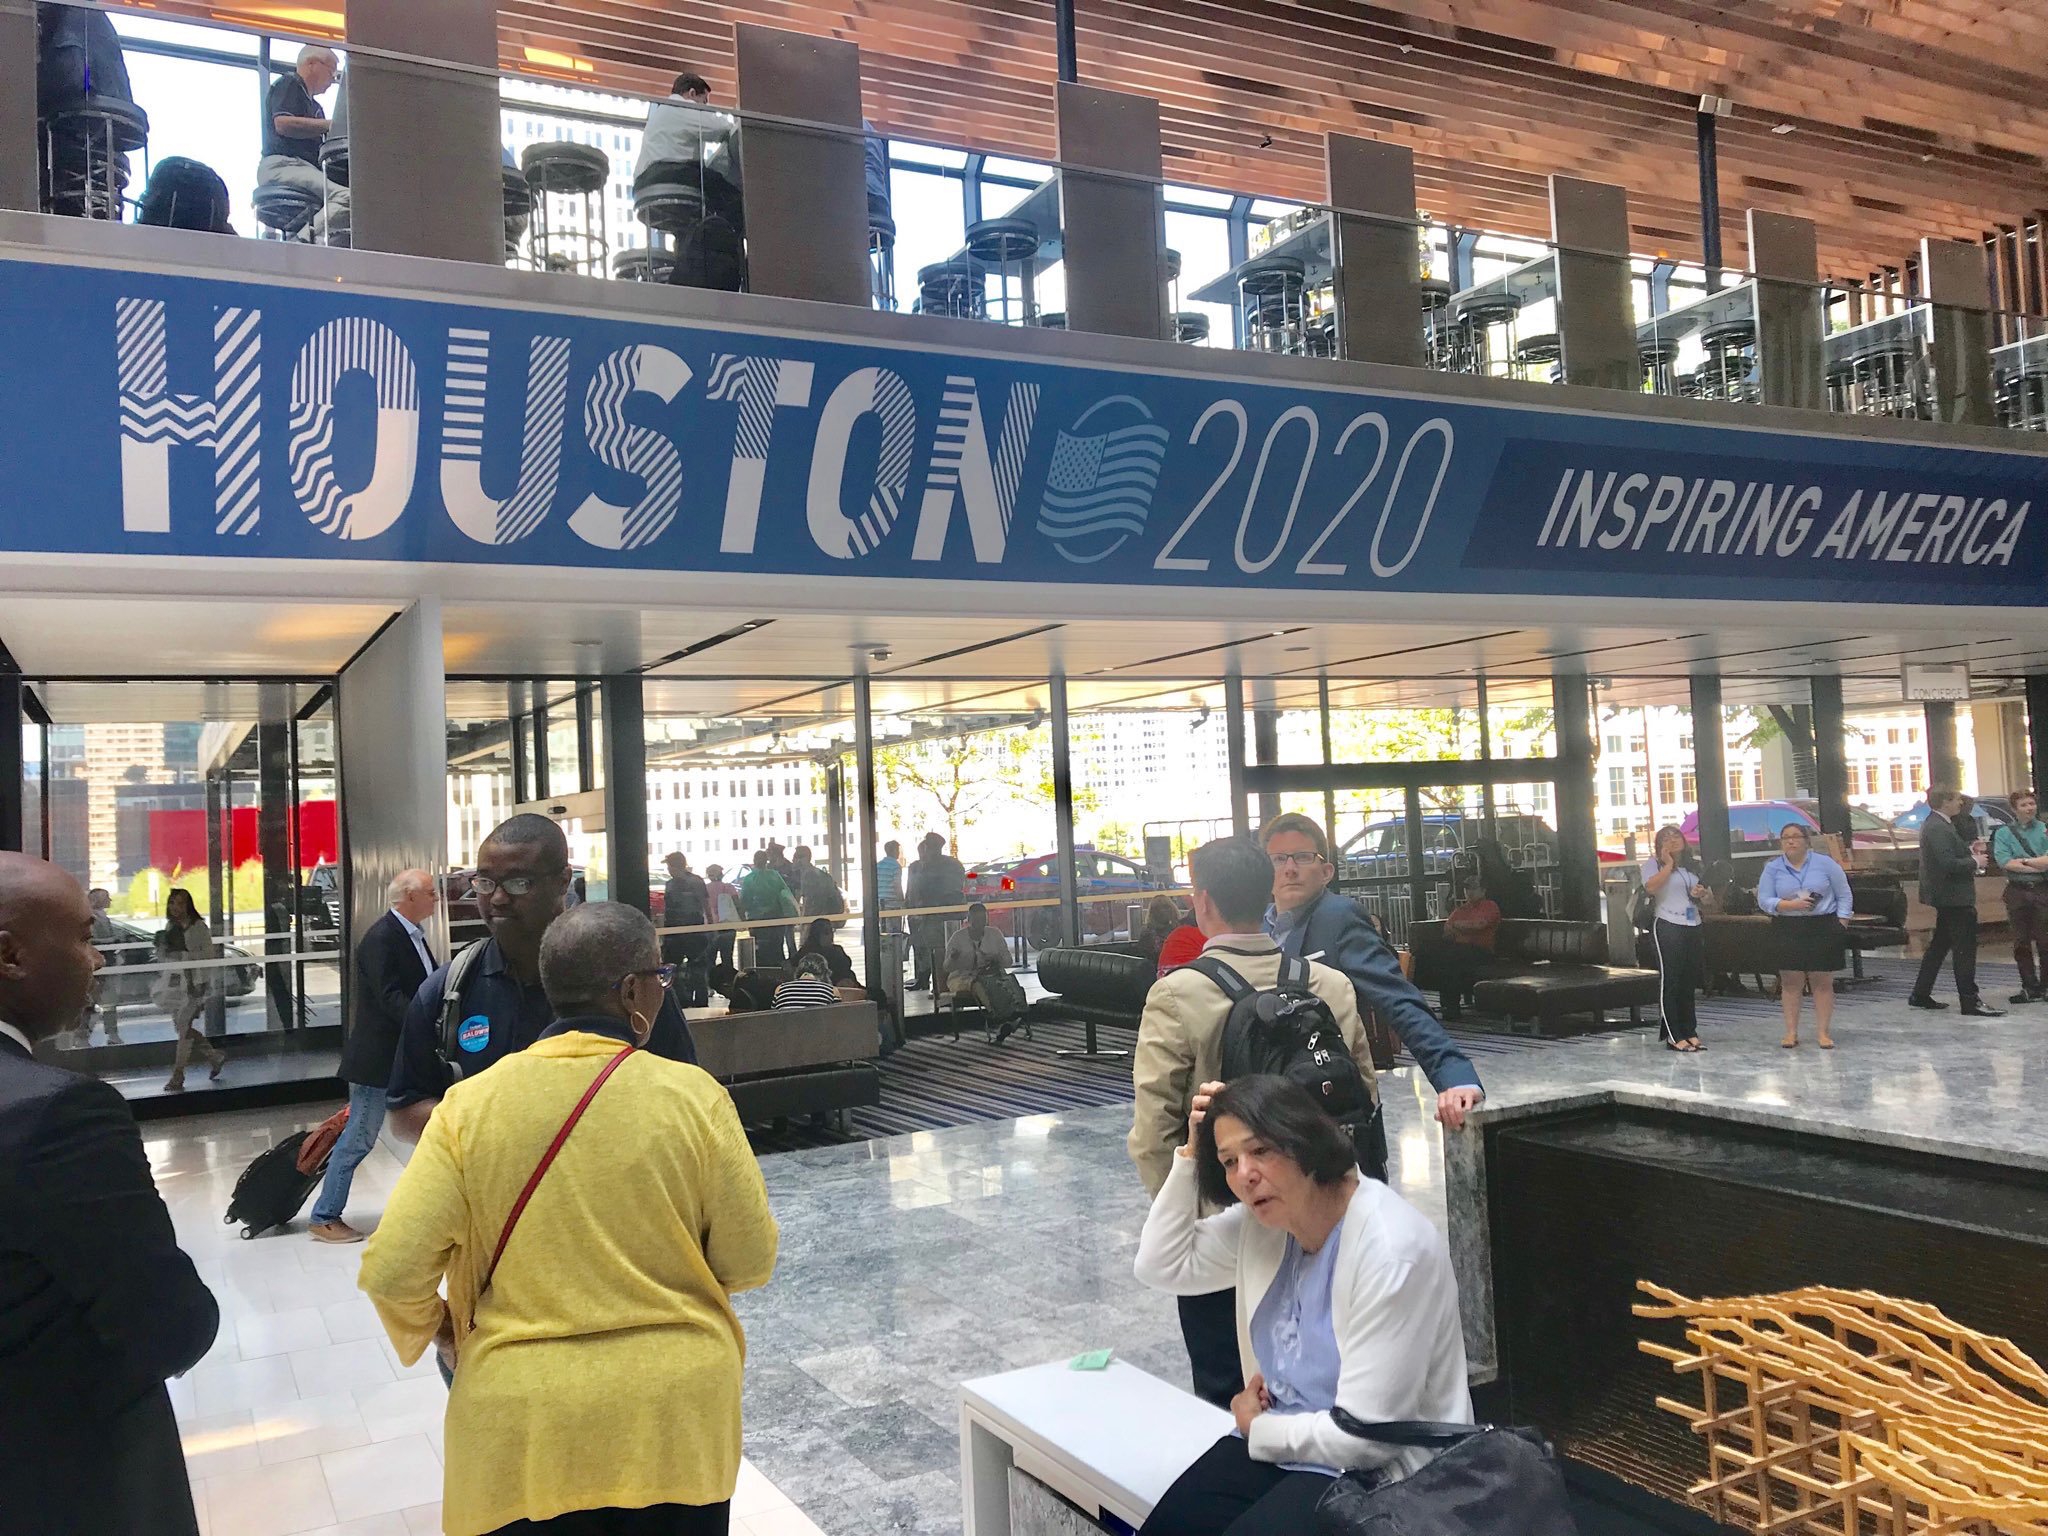 Houston DNC 2020 Striped Text